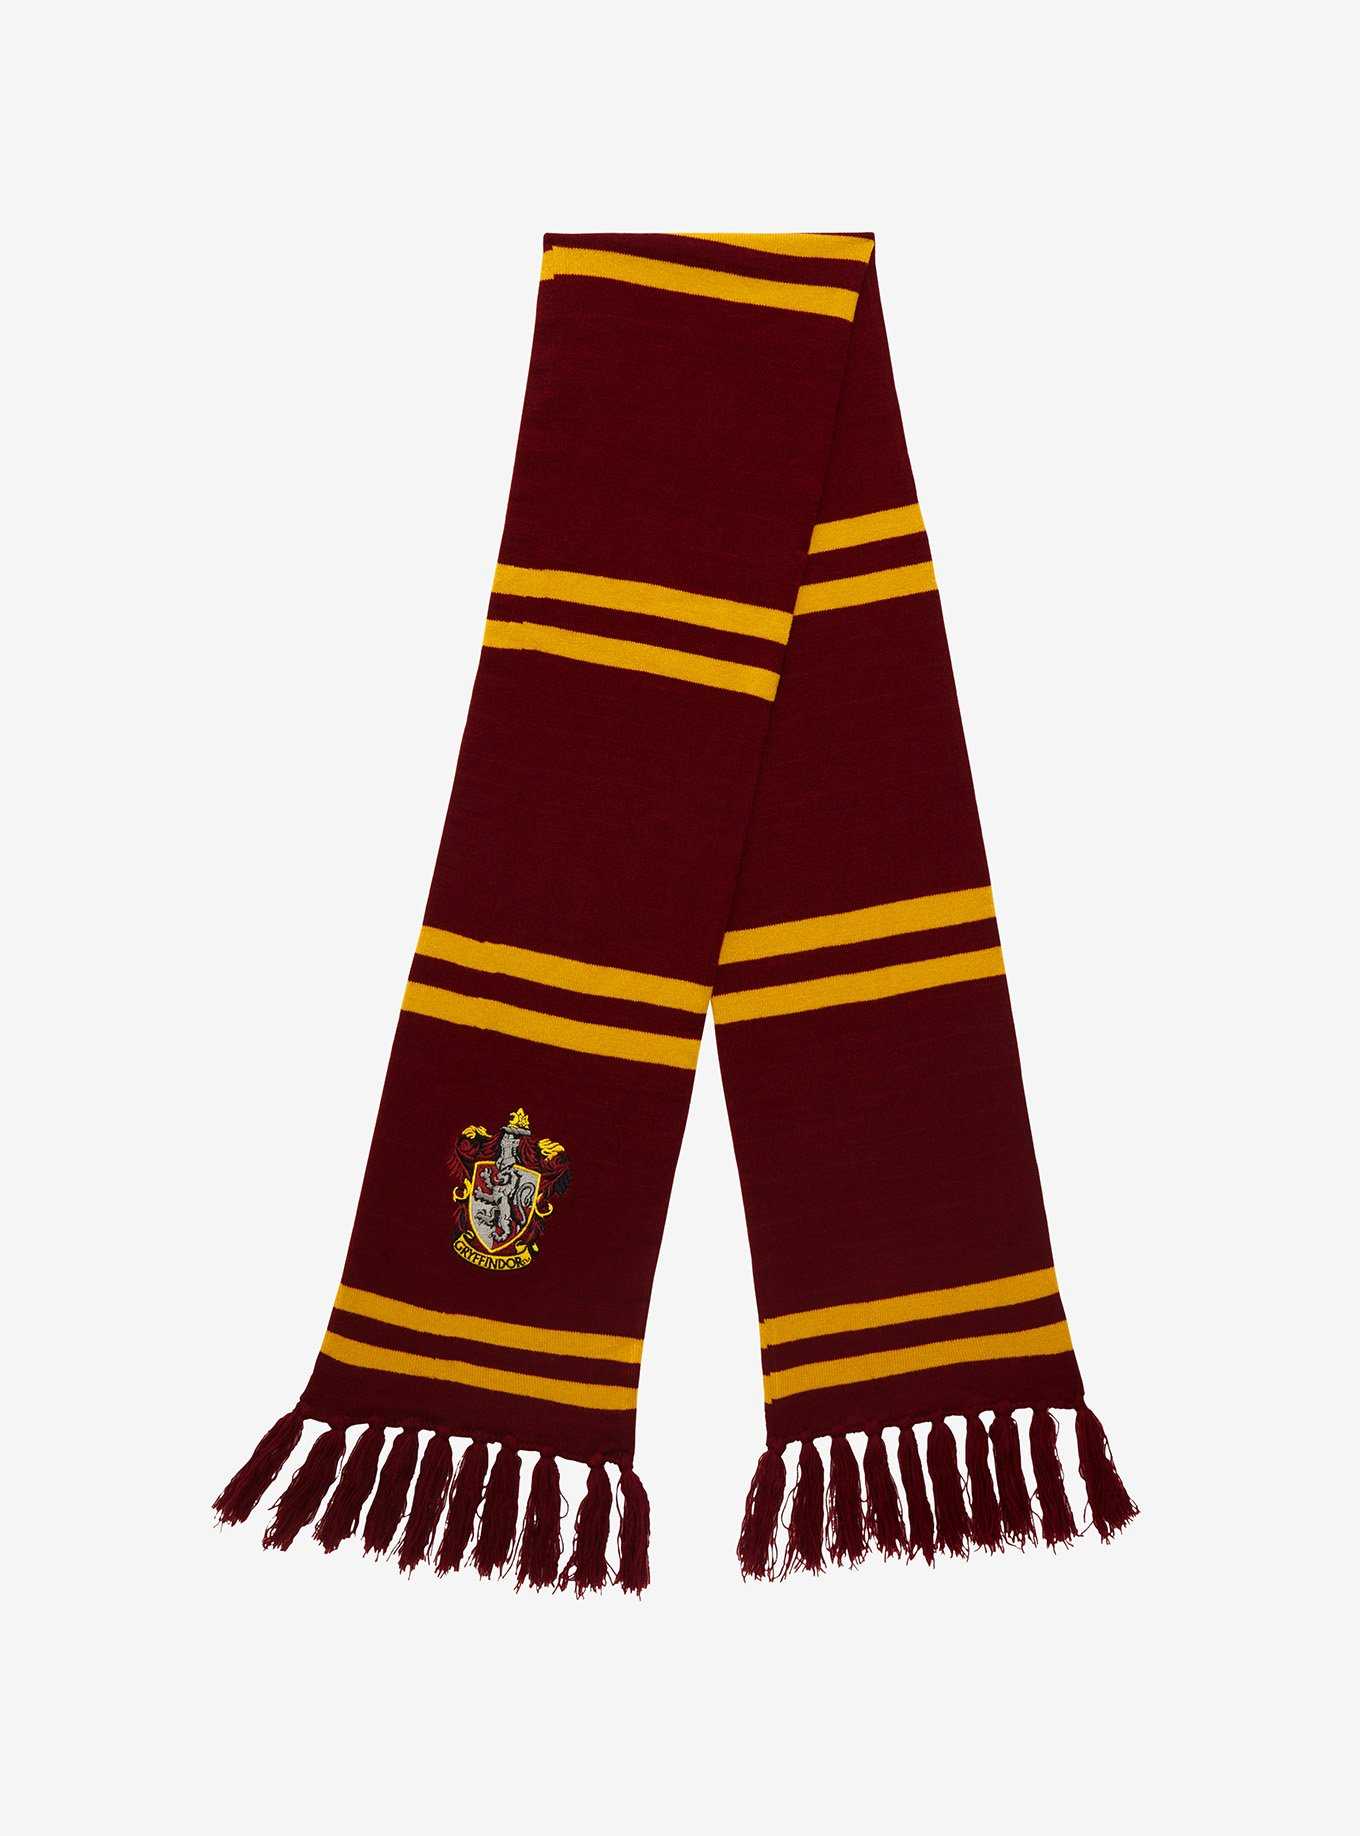 Harry Potter Gryffindor Crest Scarf Set, , hi-res